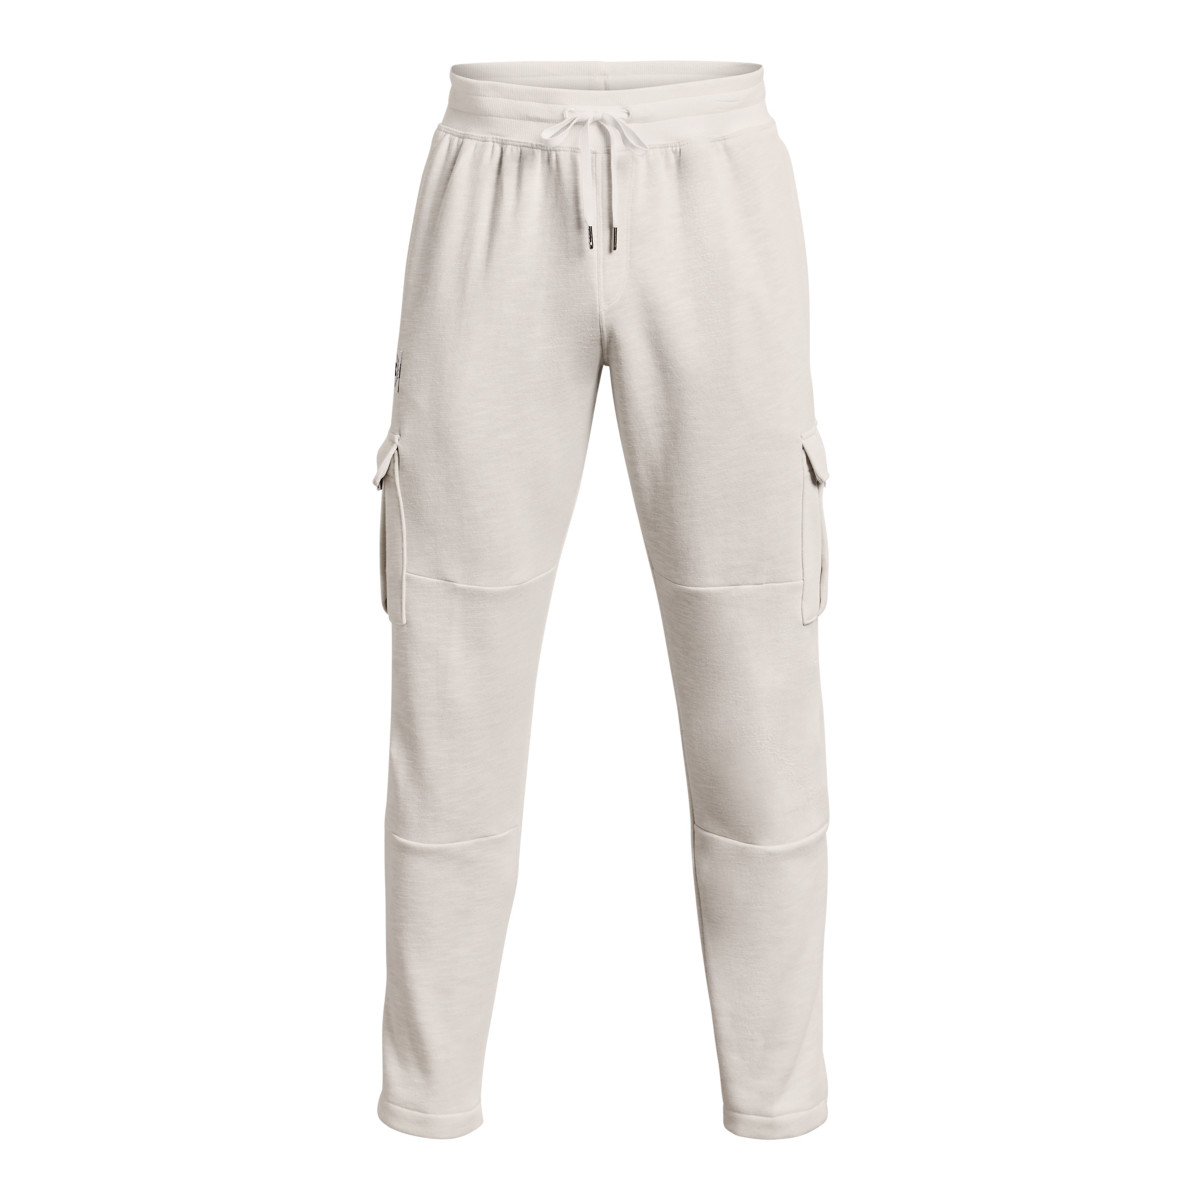 Vêtements Homme Pantalons de survêtement Under Armour Essential Fleece Heritage Cargo Blanc